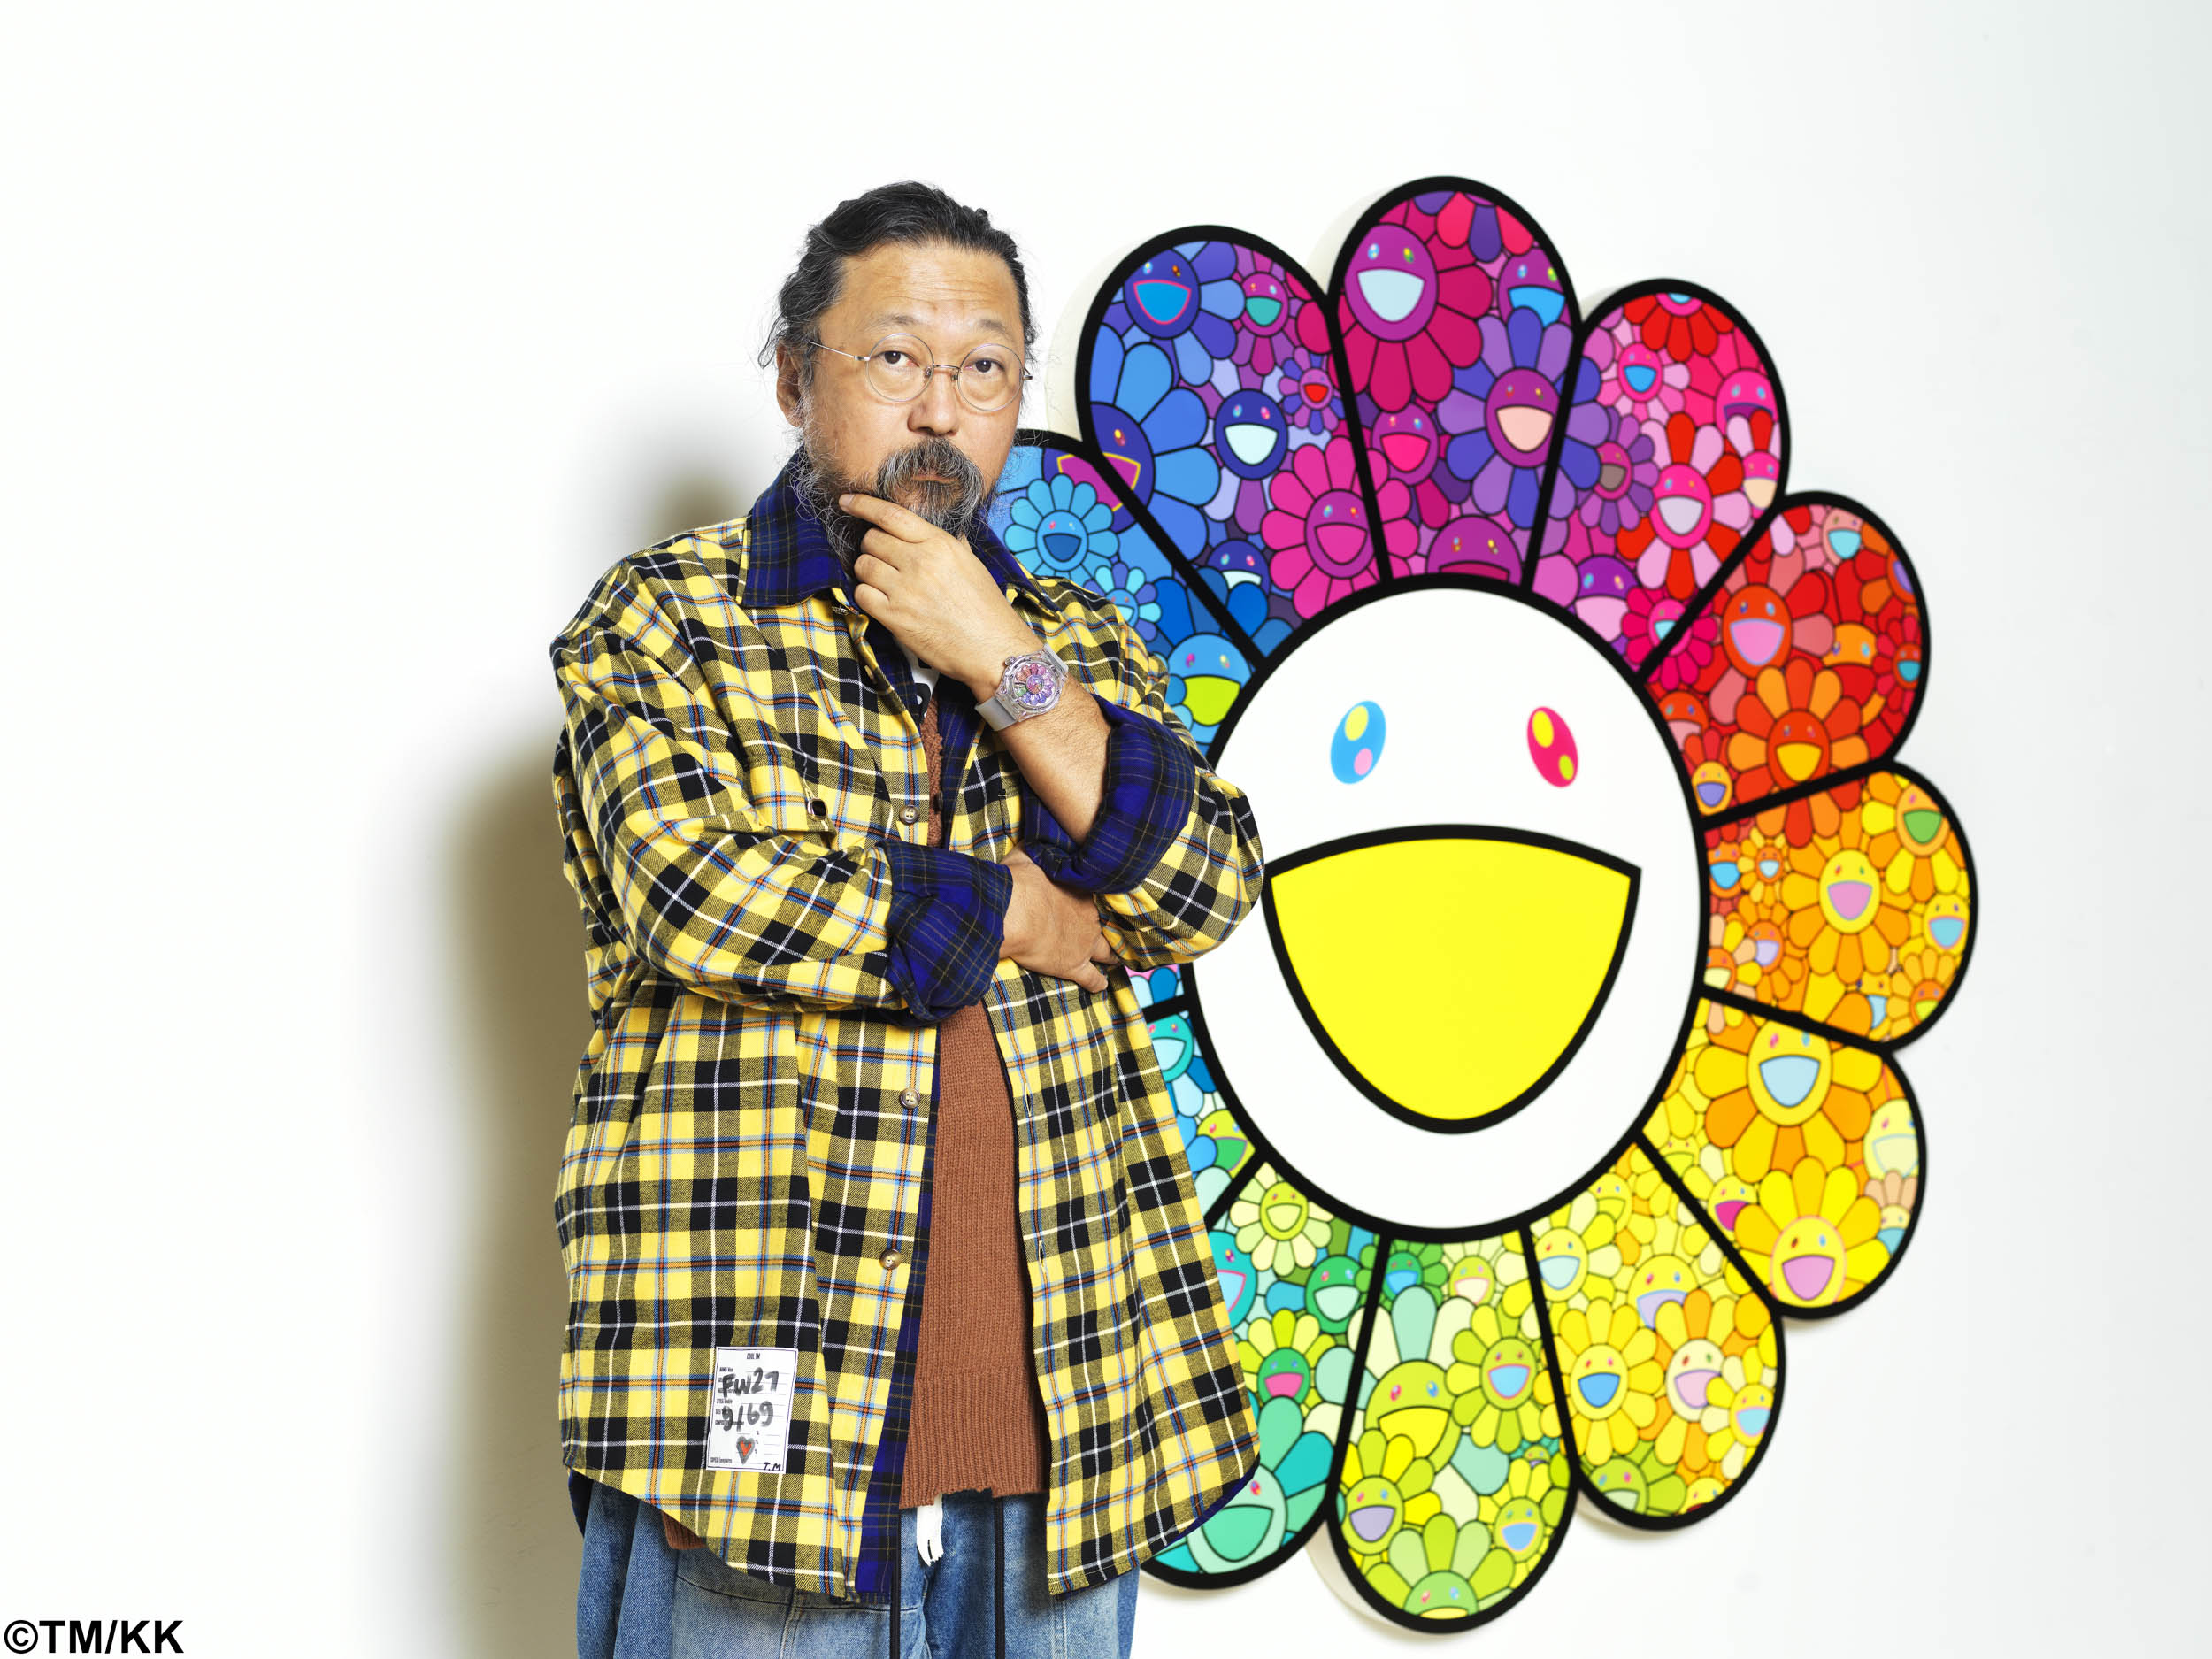 Unveiling The Hublot Classic Fusion Takashi Murakami Sapphire Rainbow